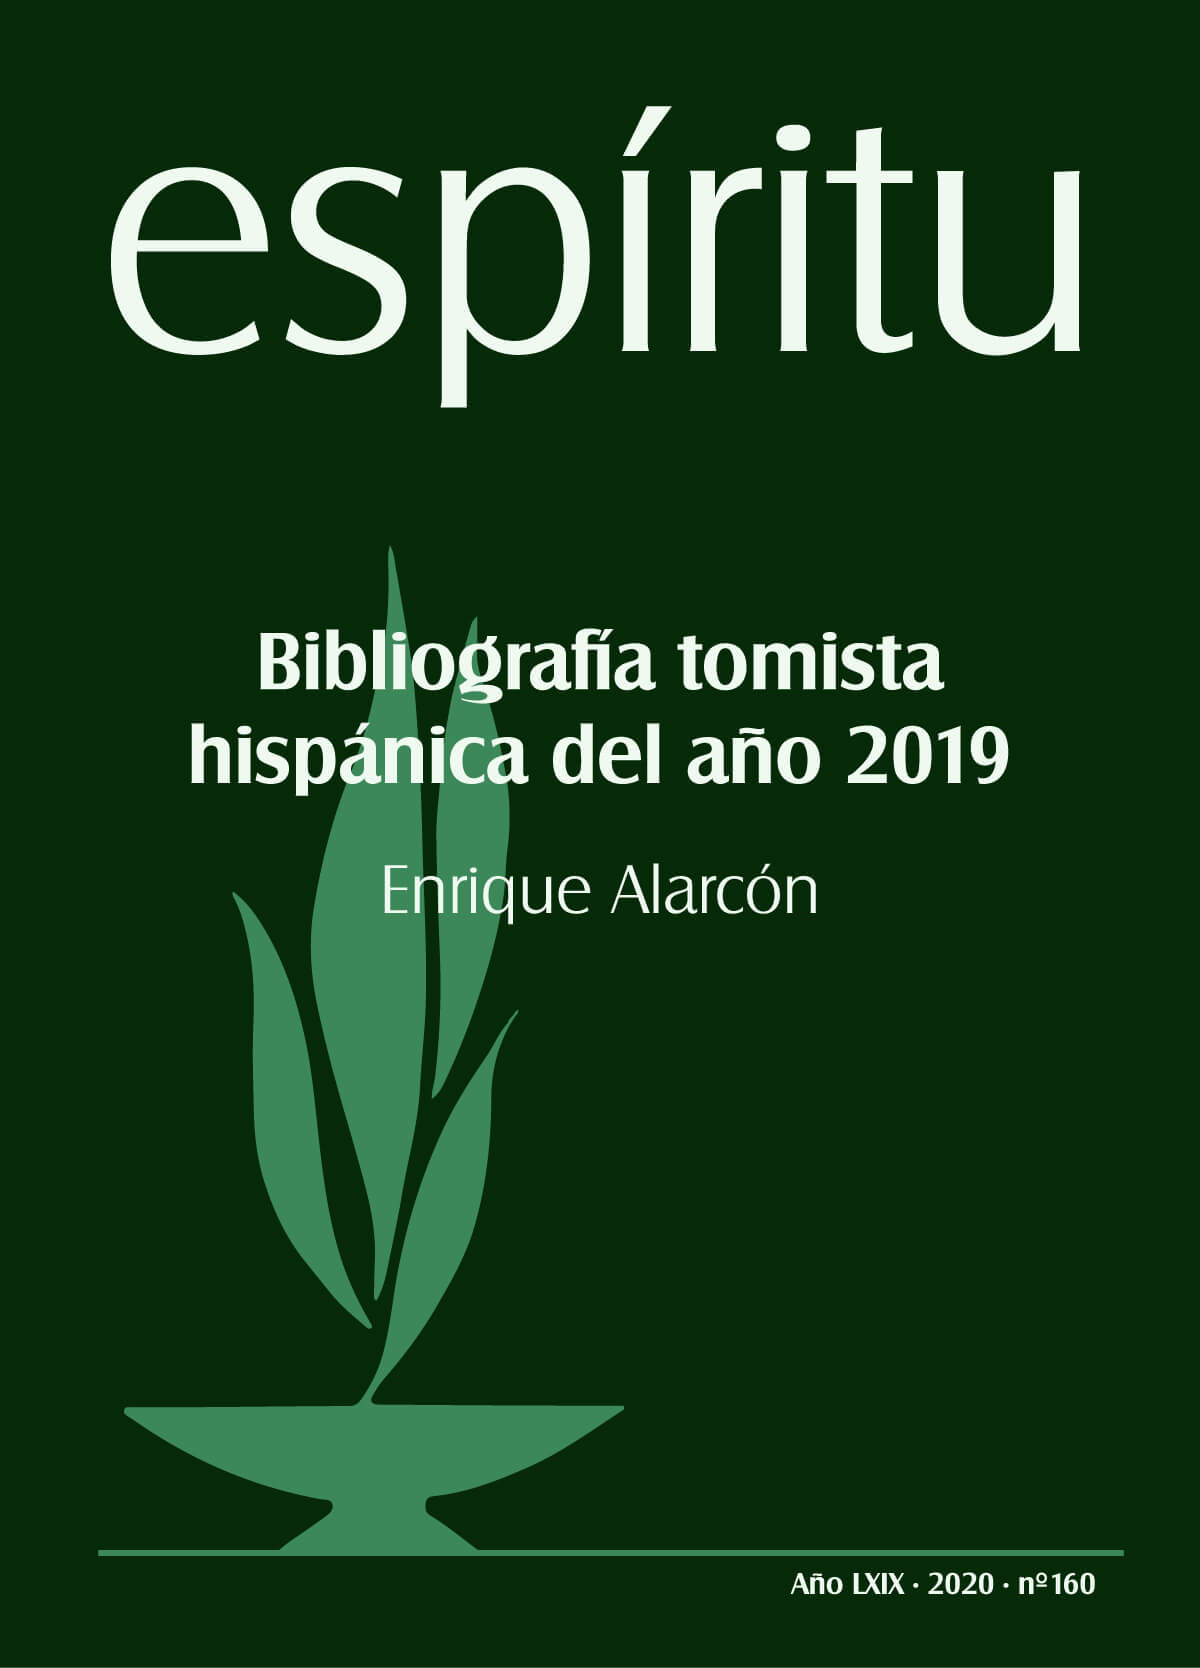 Bibliografía tomista hispánica del año 2019